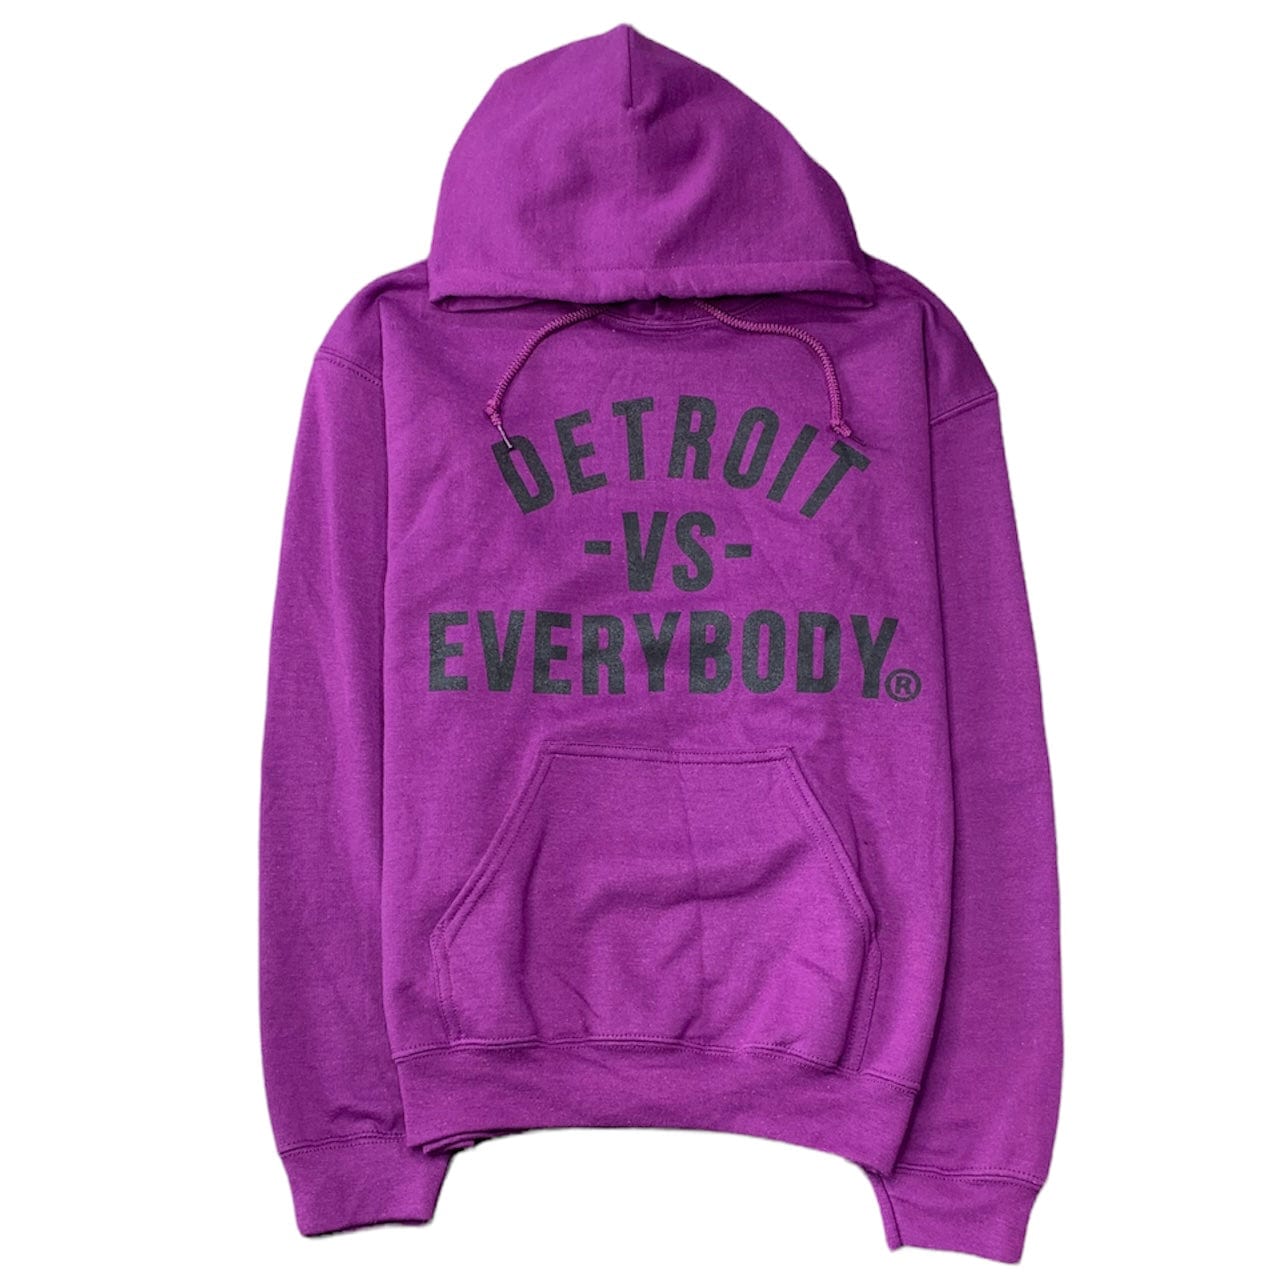 Detroit Vs Everybody (@vs_everybody) / X